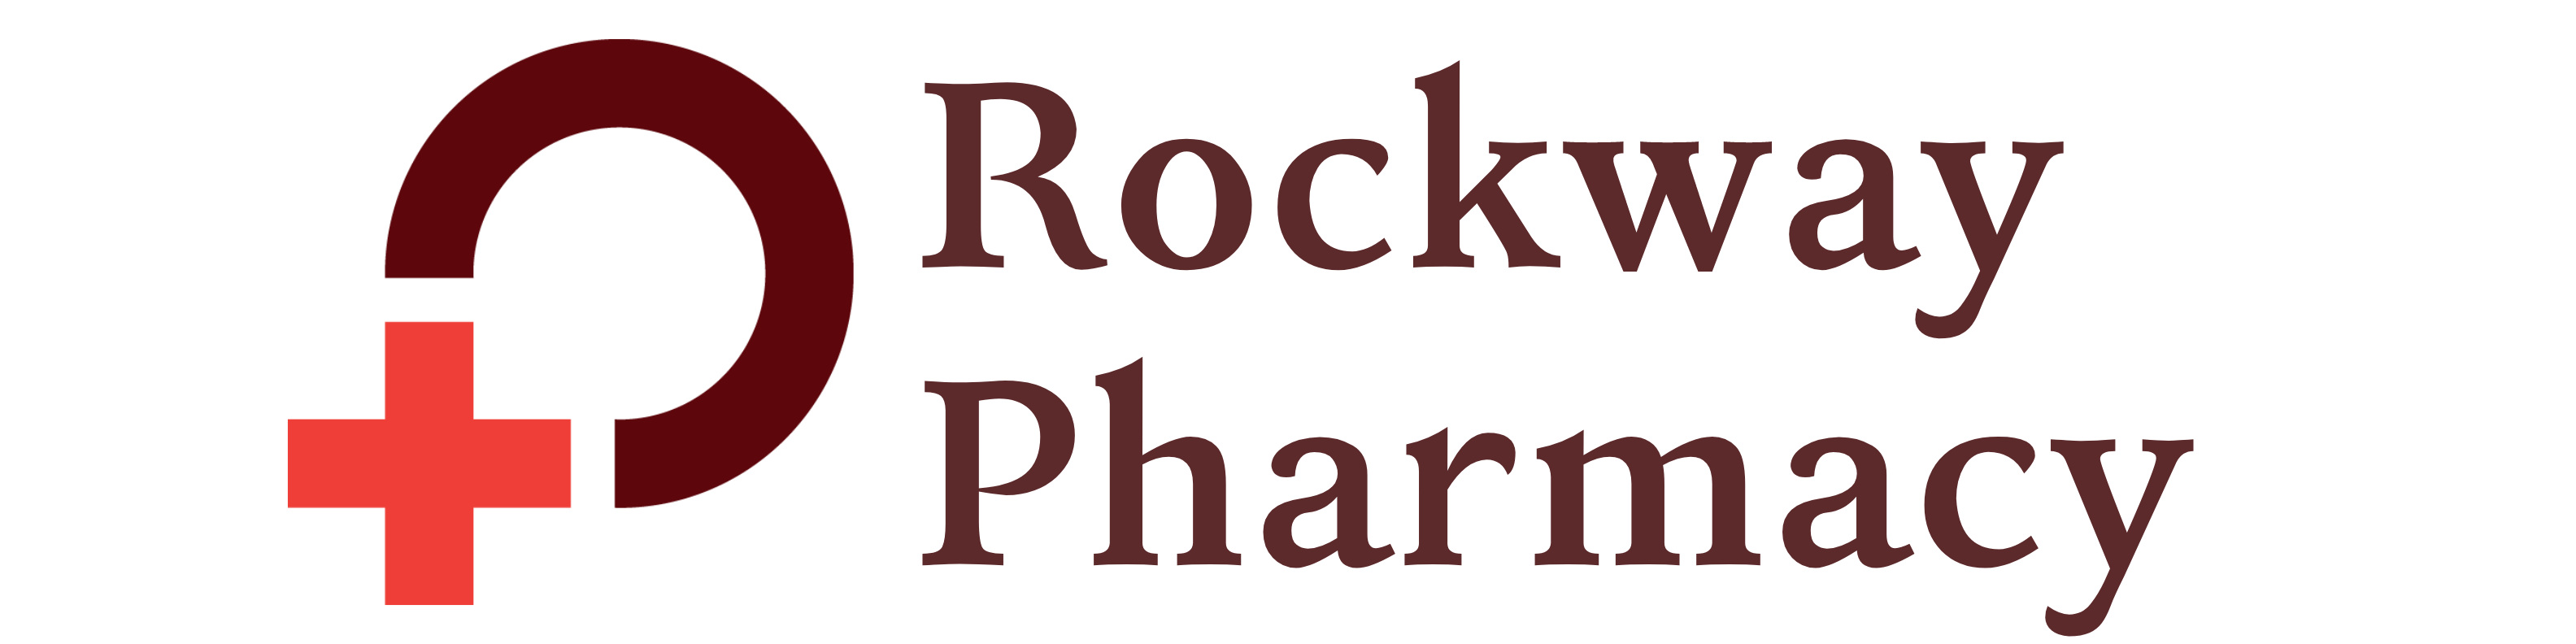 Rockway Pharmacy